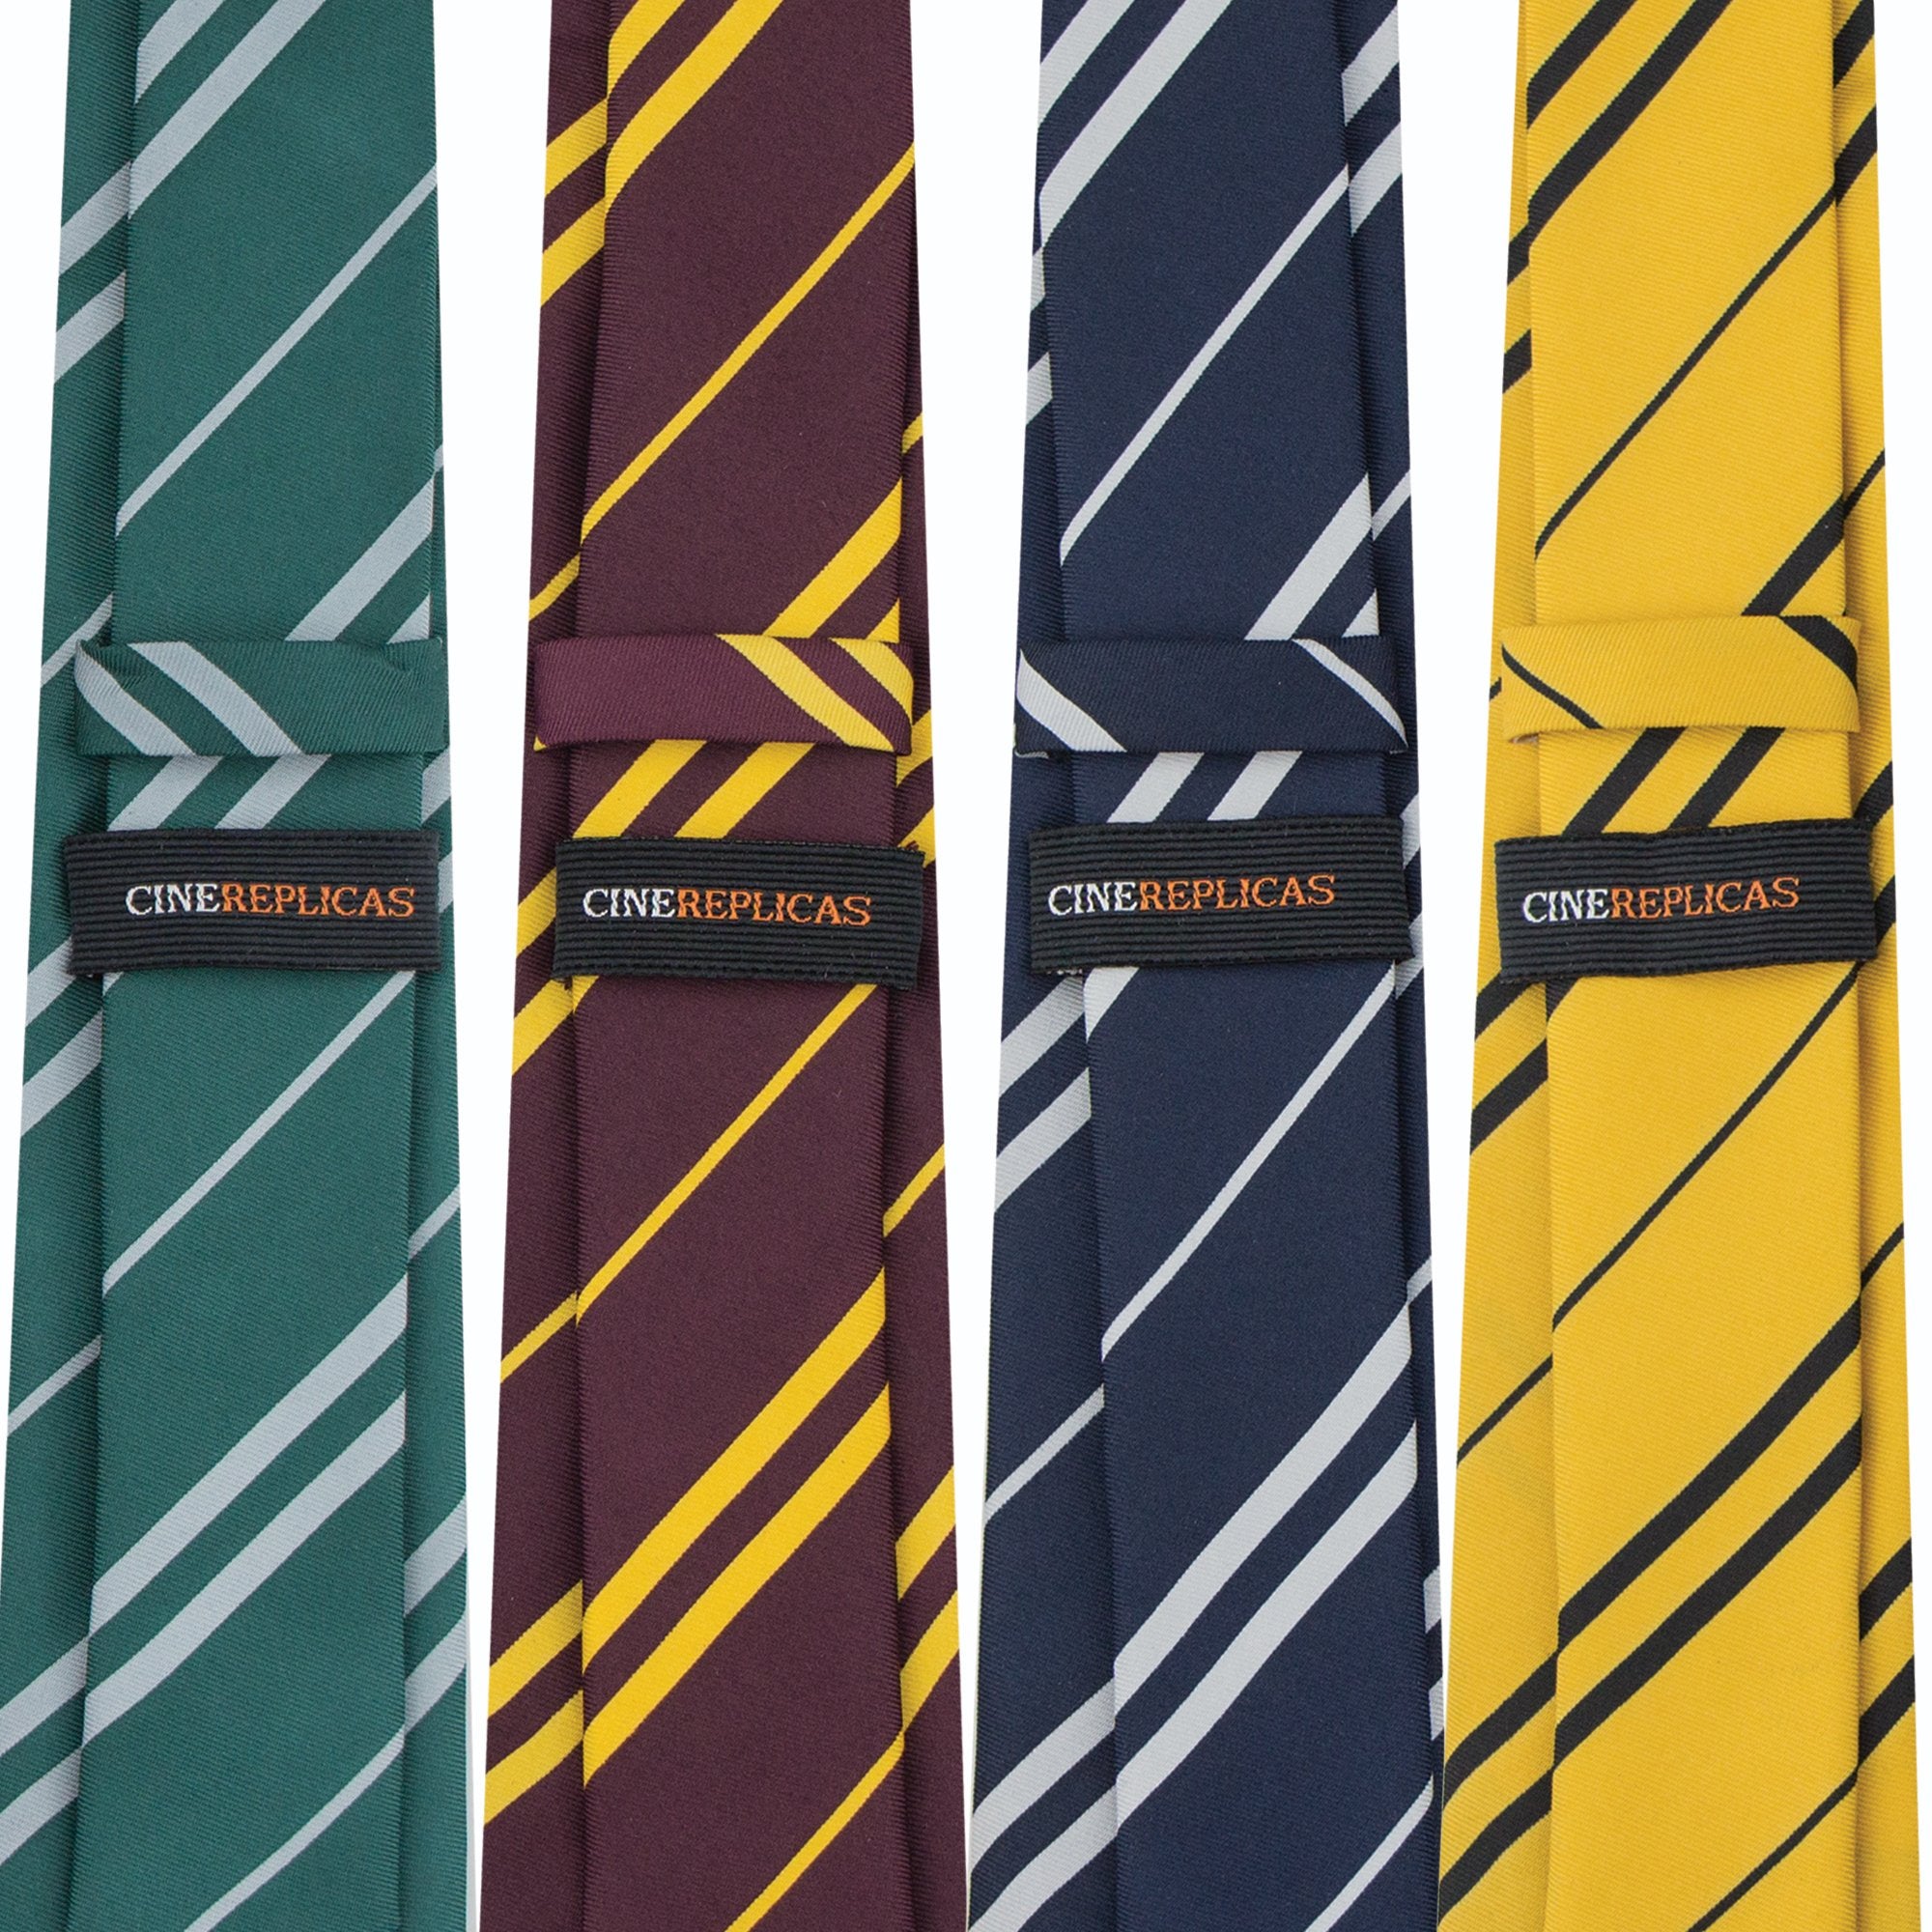 Cravate Enfants - Poufsouffle - Boutique Harry Potter